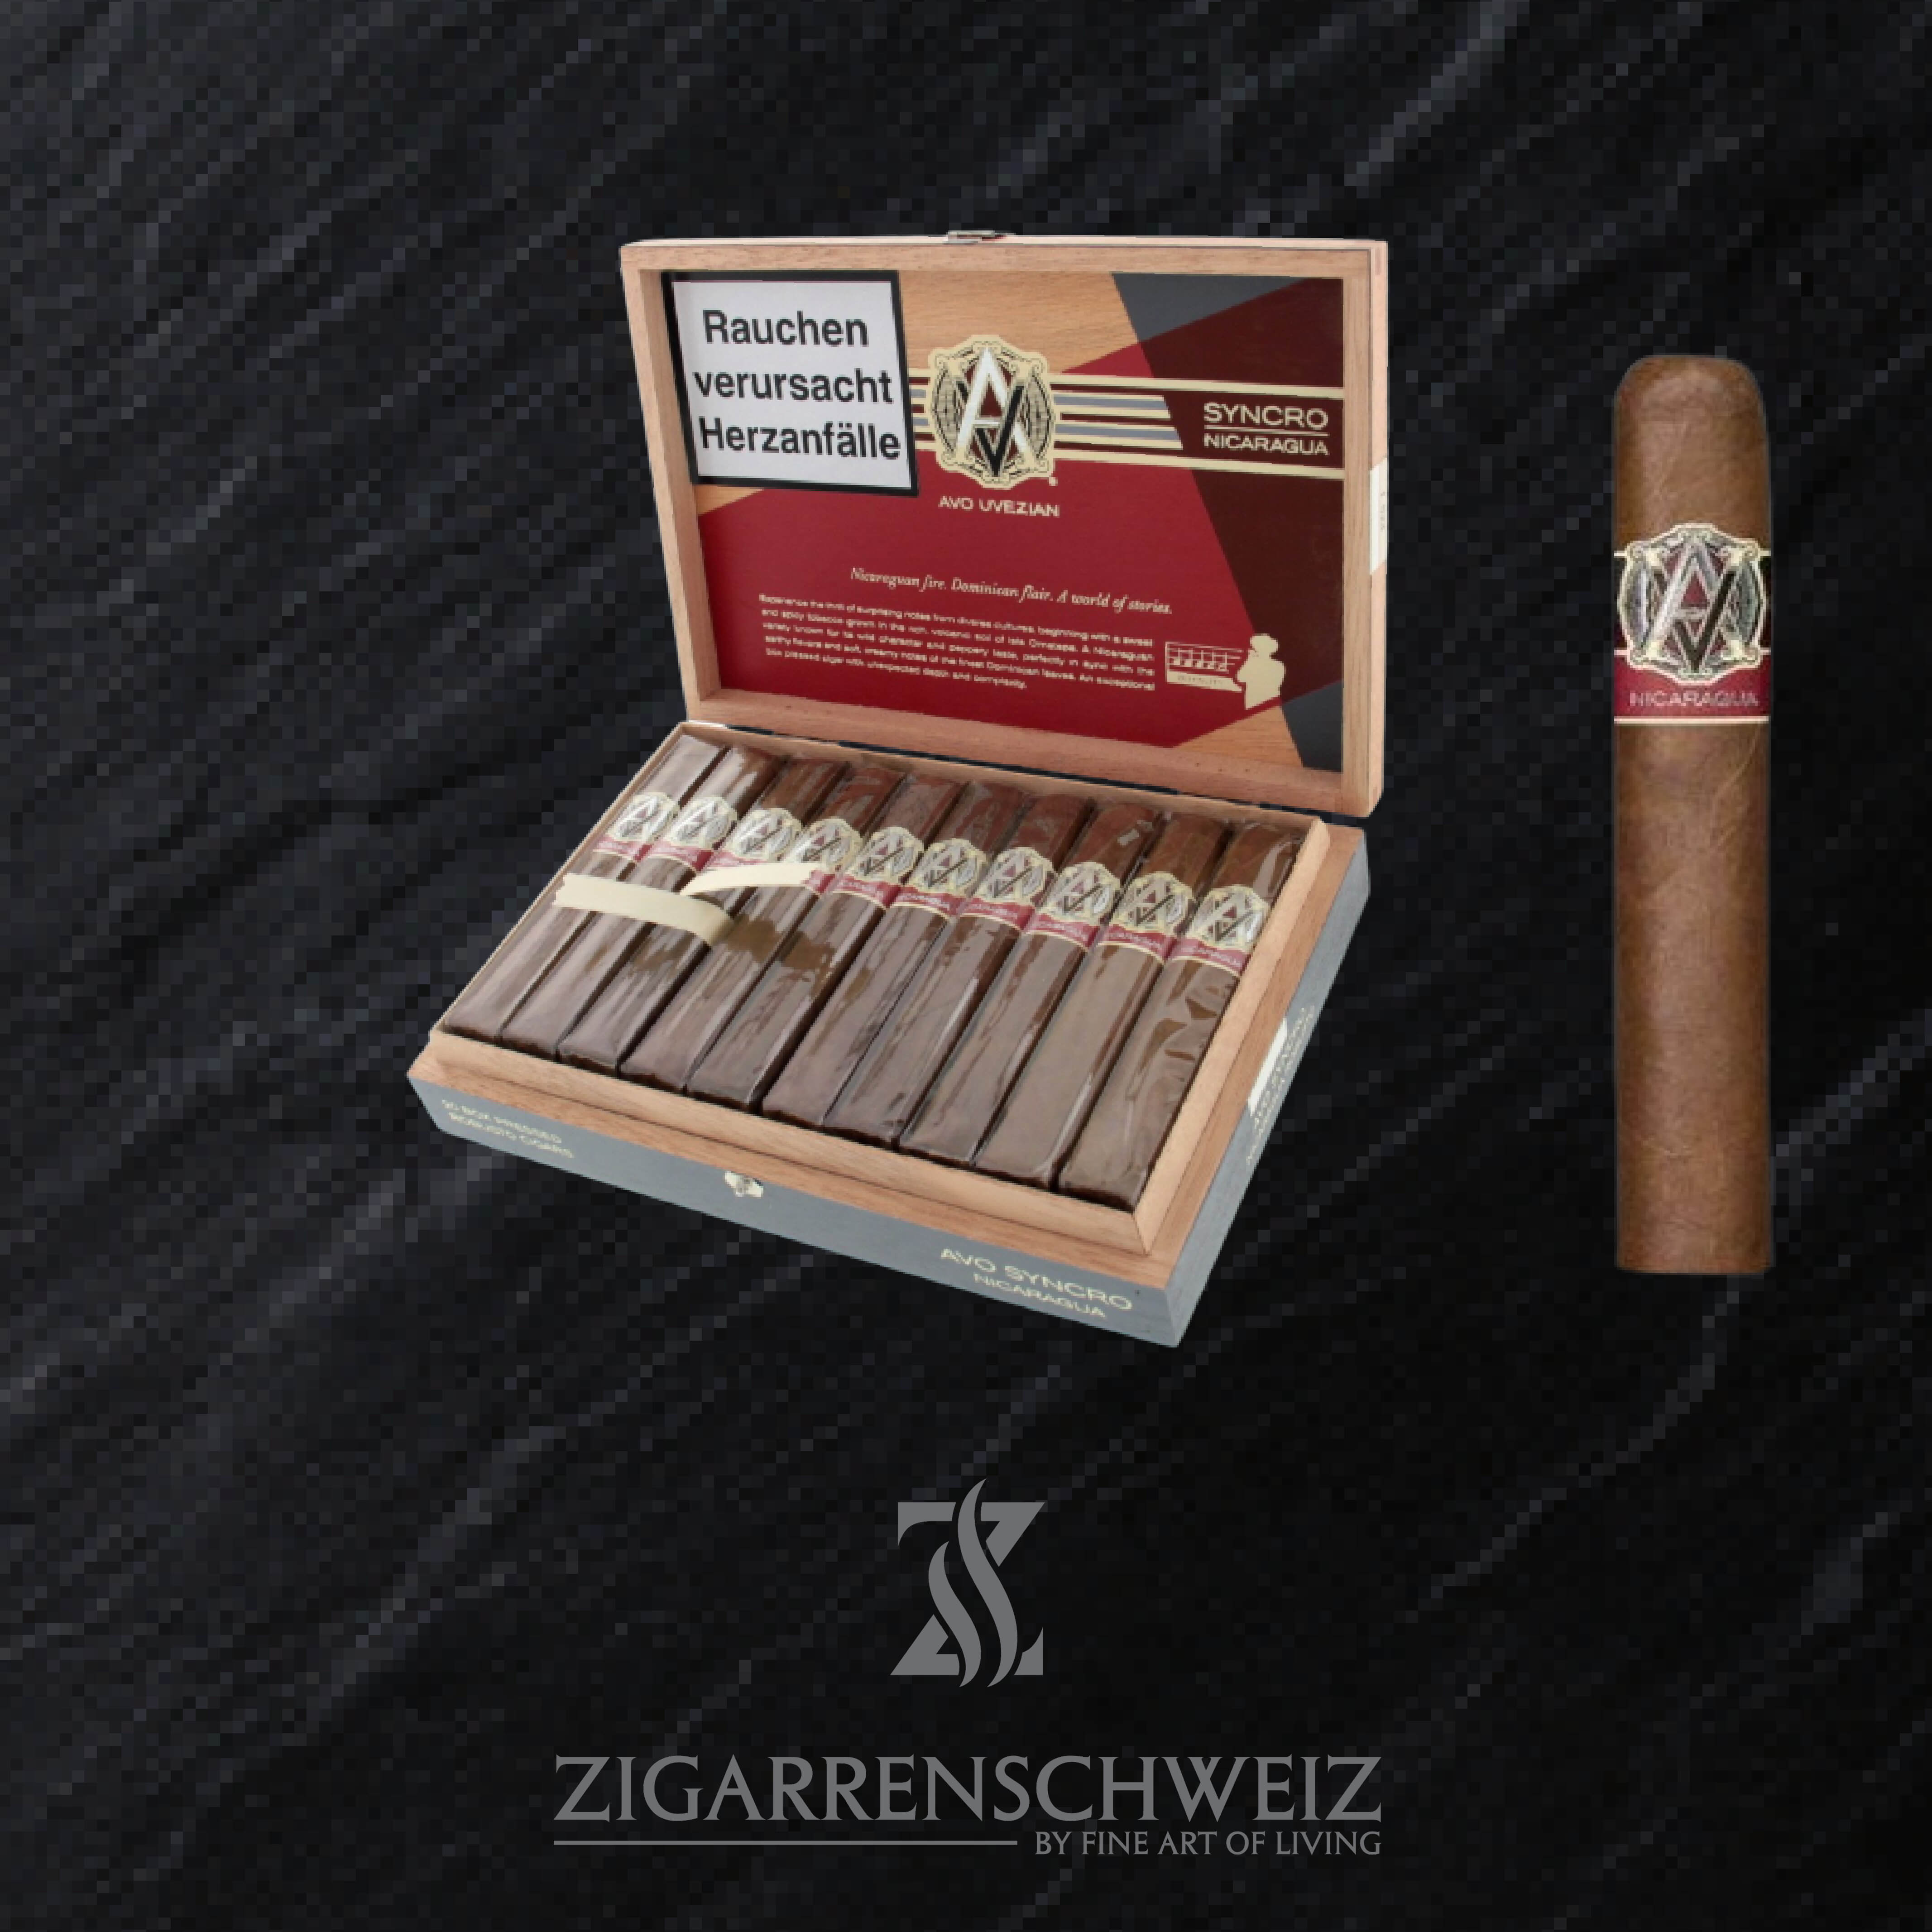 Zigarren  Zigarrenschweiz Online Zigarren Boutique